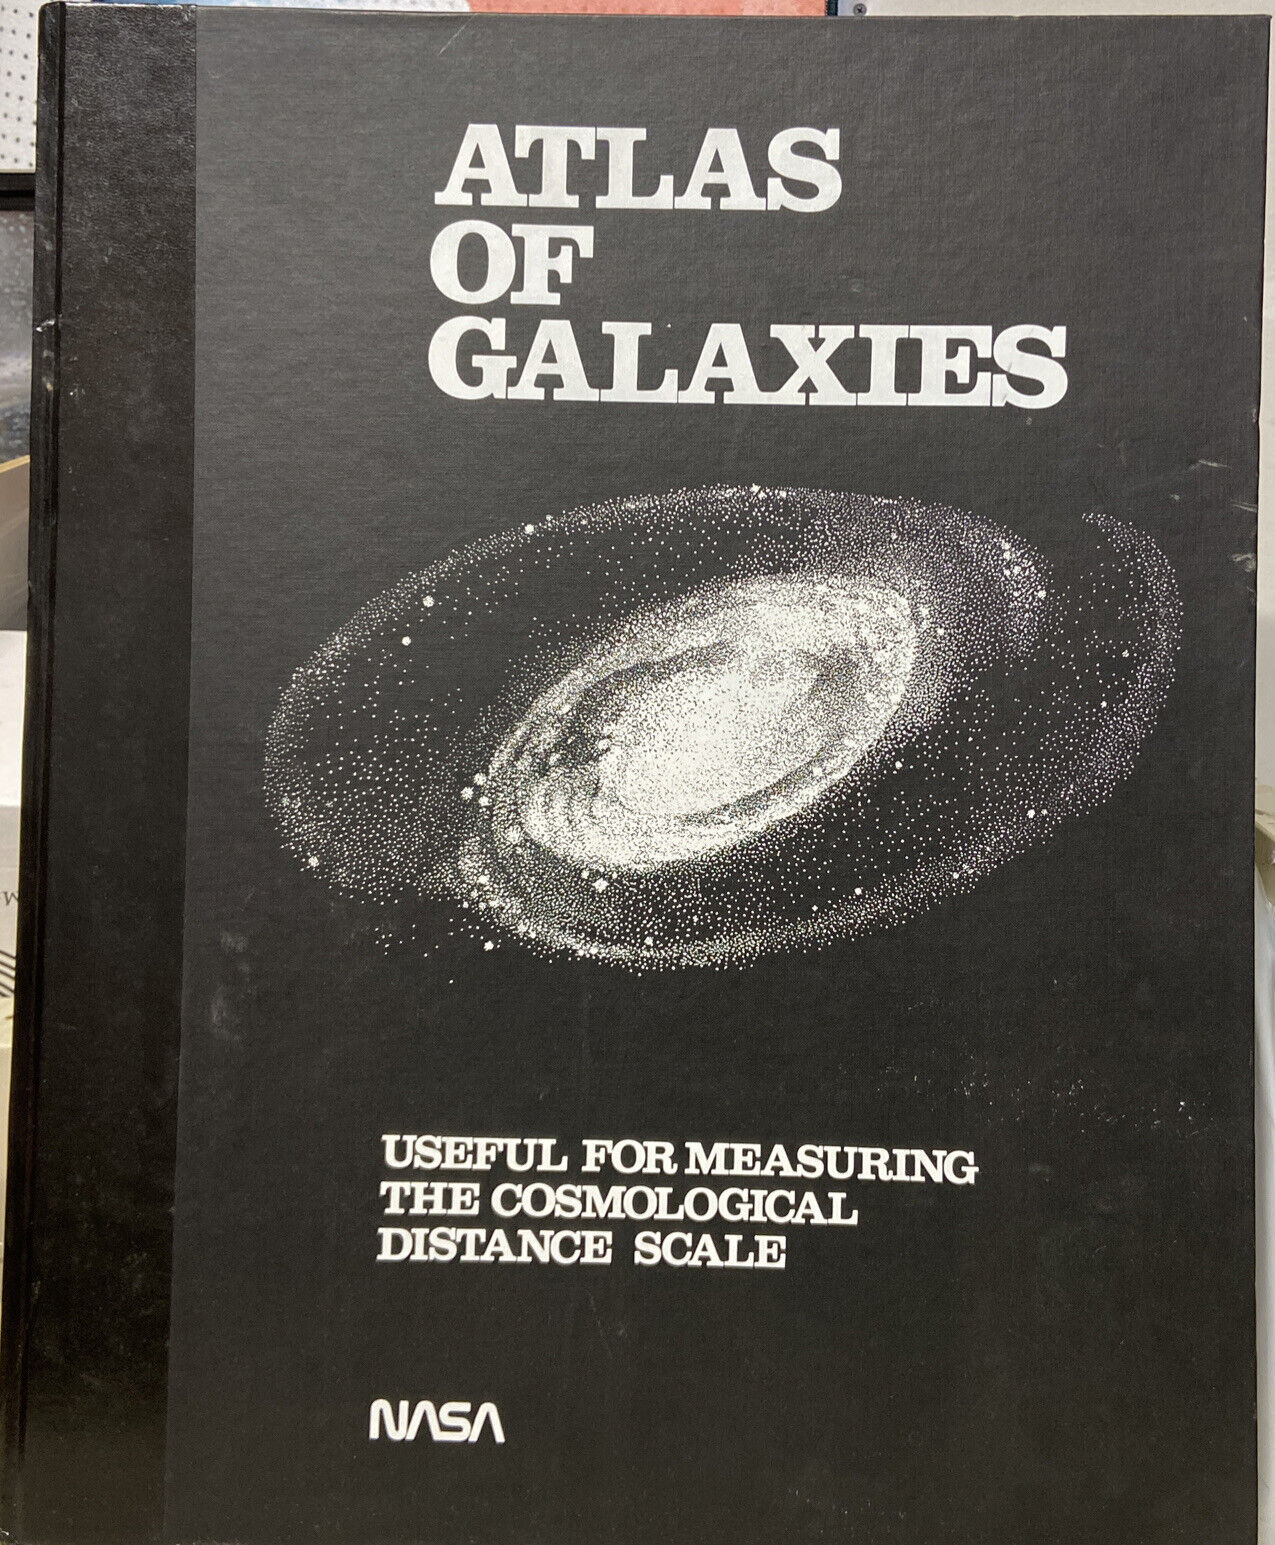 1988 NASA Atlas Of The Galaxies * Cosmology Astronomy Astrophysics BOOK